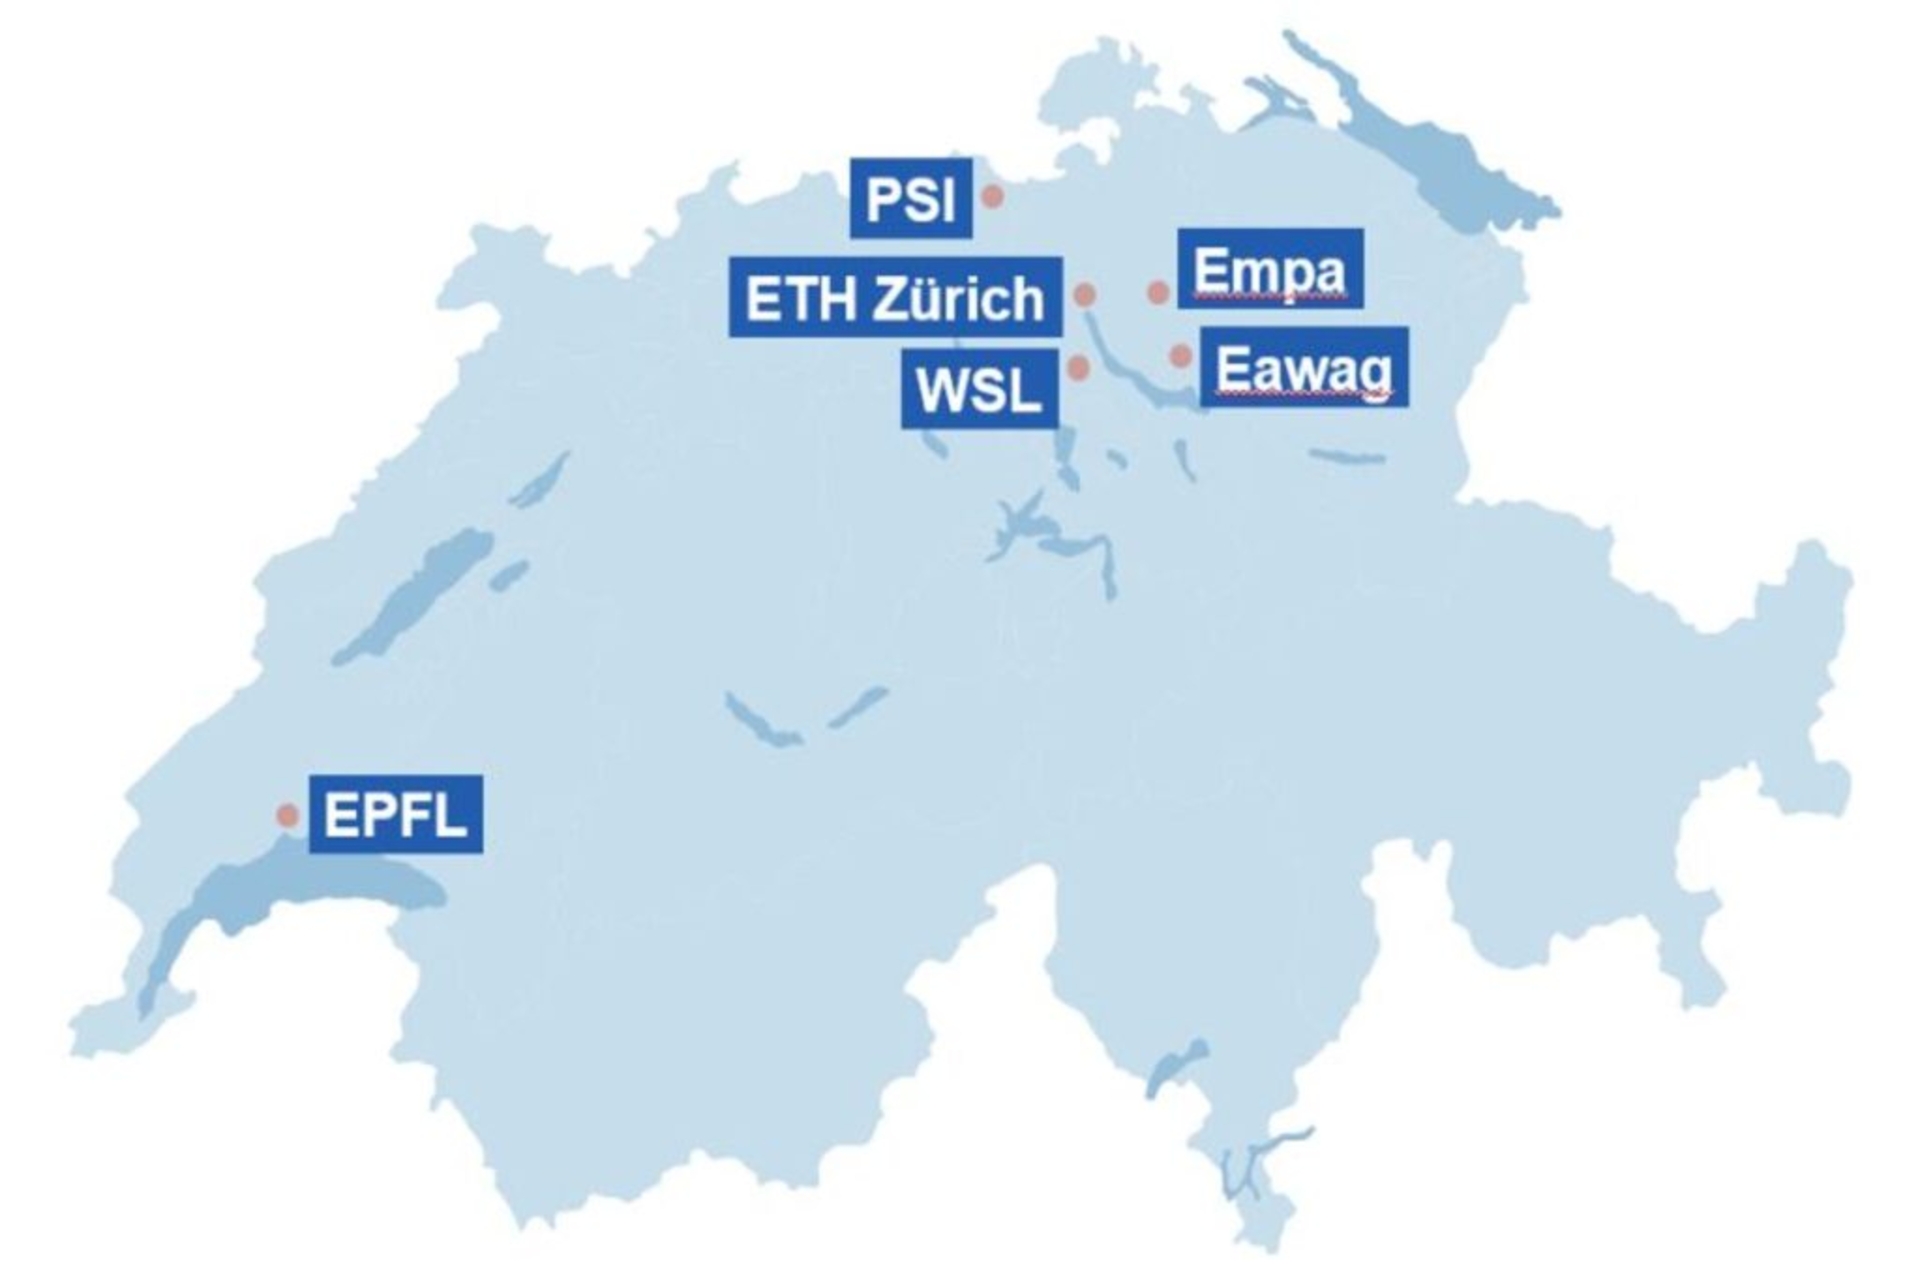 Շվեյցարական հետազոտական ​​կենտրոններ՝ EMPA, EAWAG, WSL և PSI